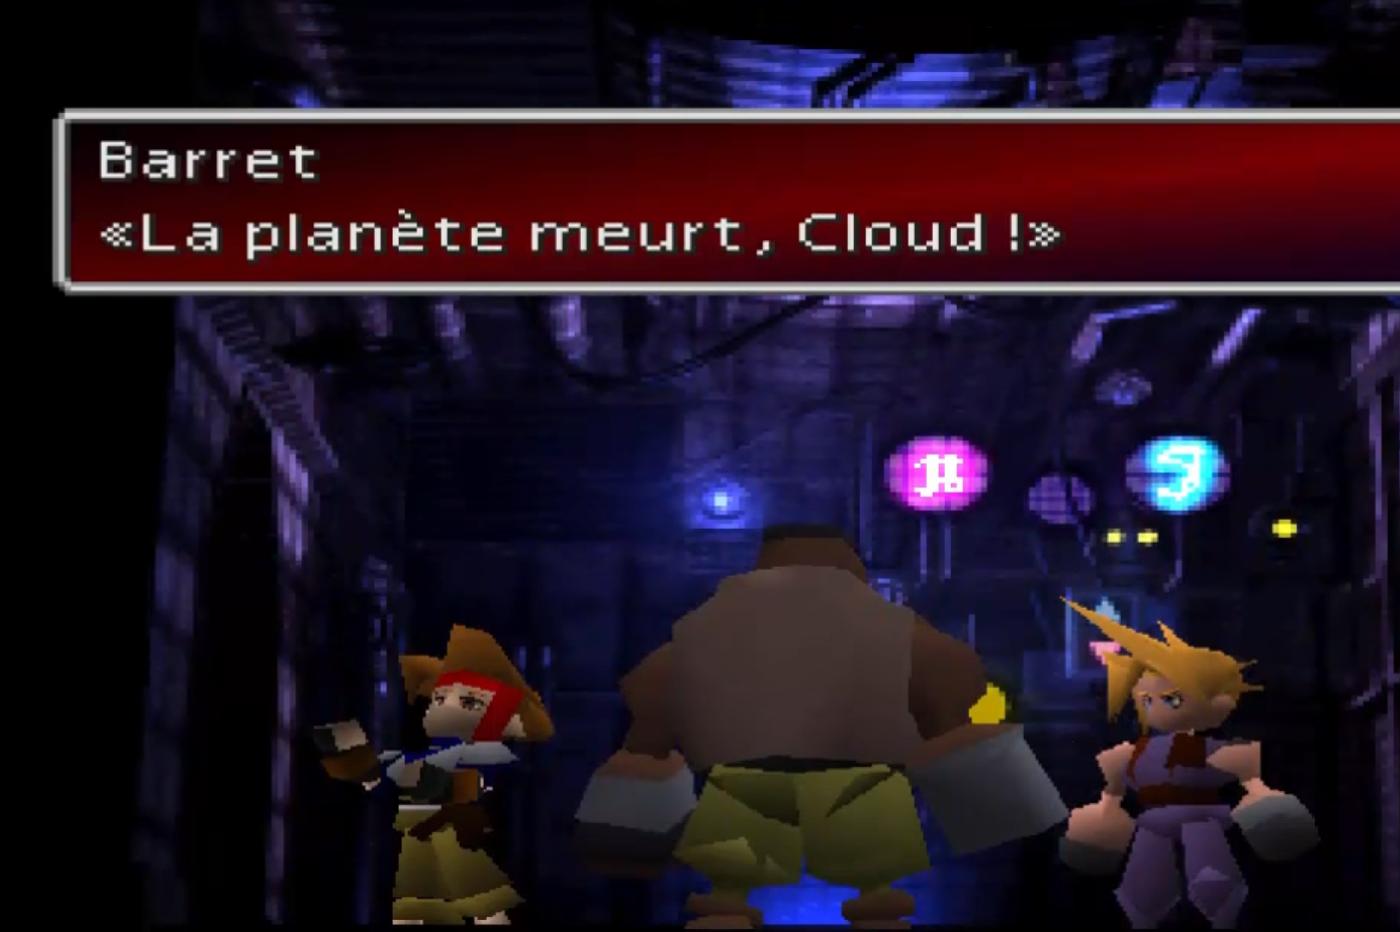 Capture d'écran du FF7 original avec Barret qui dit à Cloud "La Planète meurt, Cloud !"